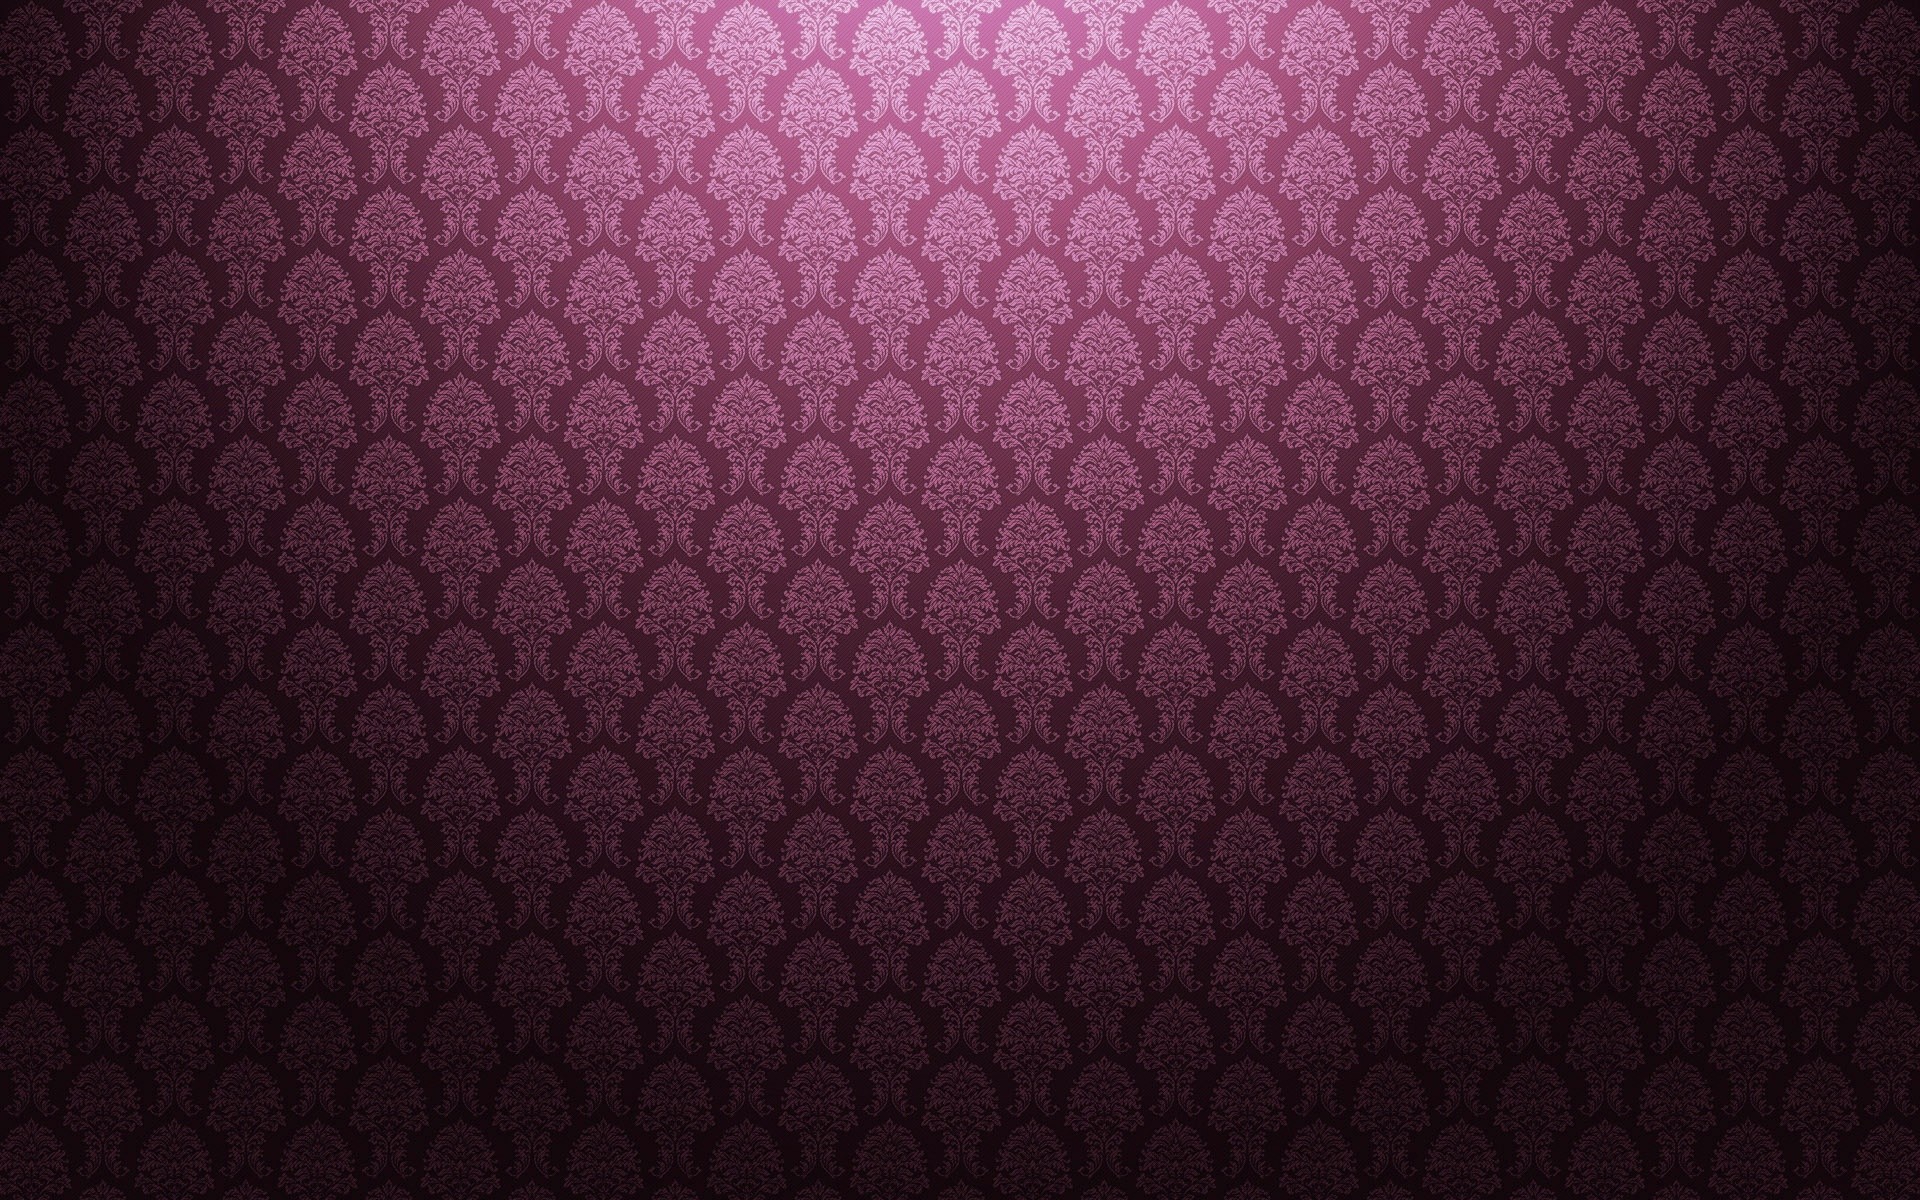 1920x1200 wallpaper pattern - Google Search